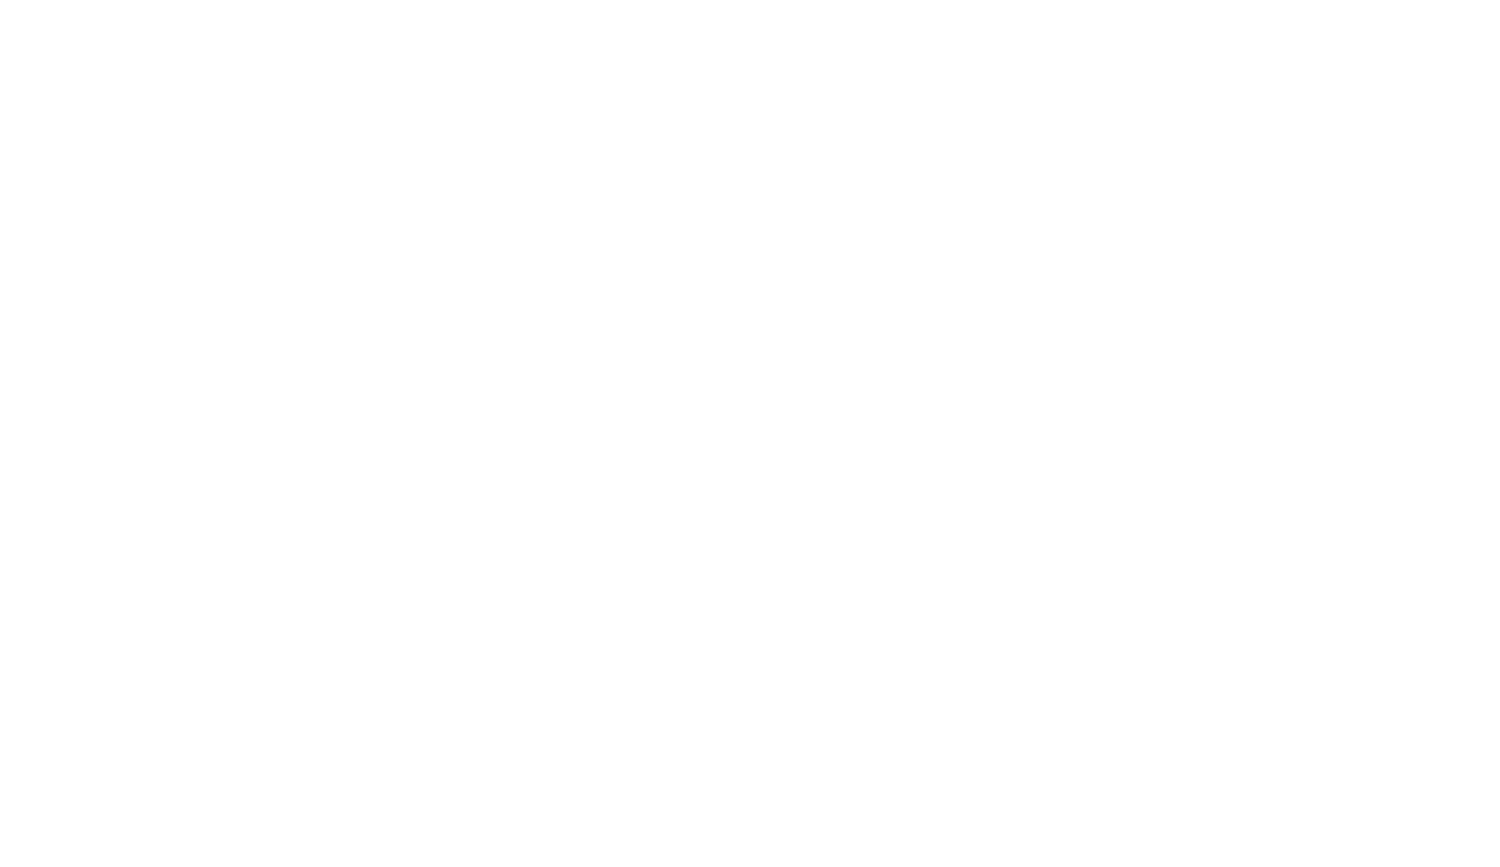 Barby Timmer en Bouwbedrijf